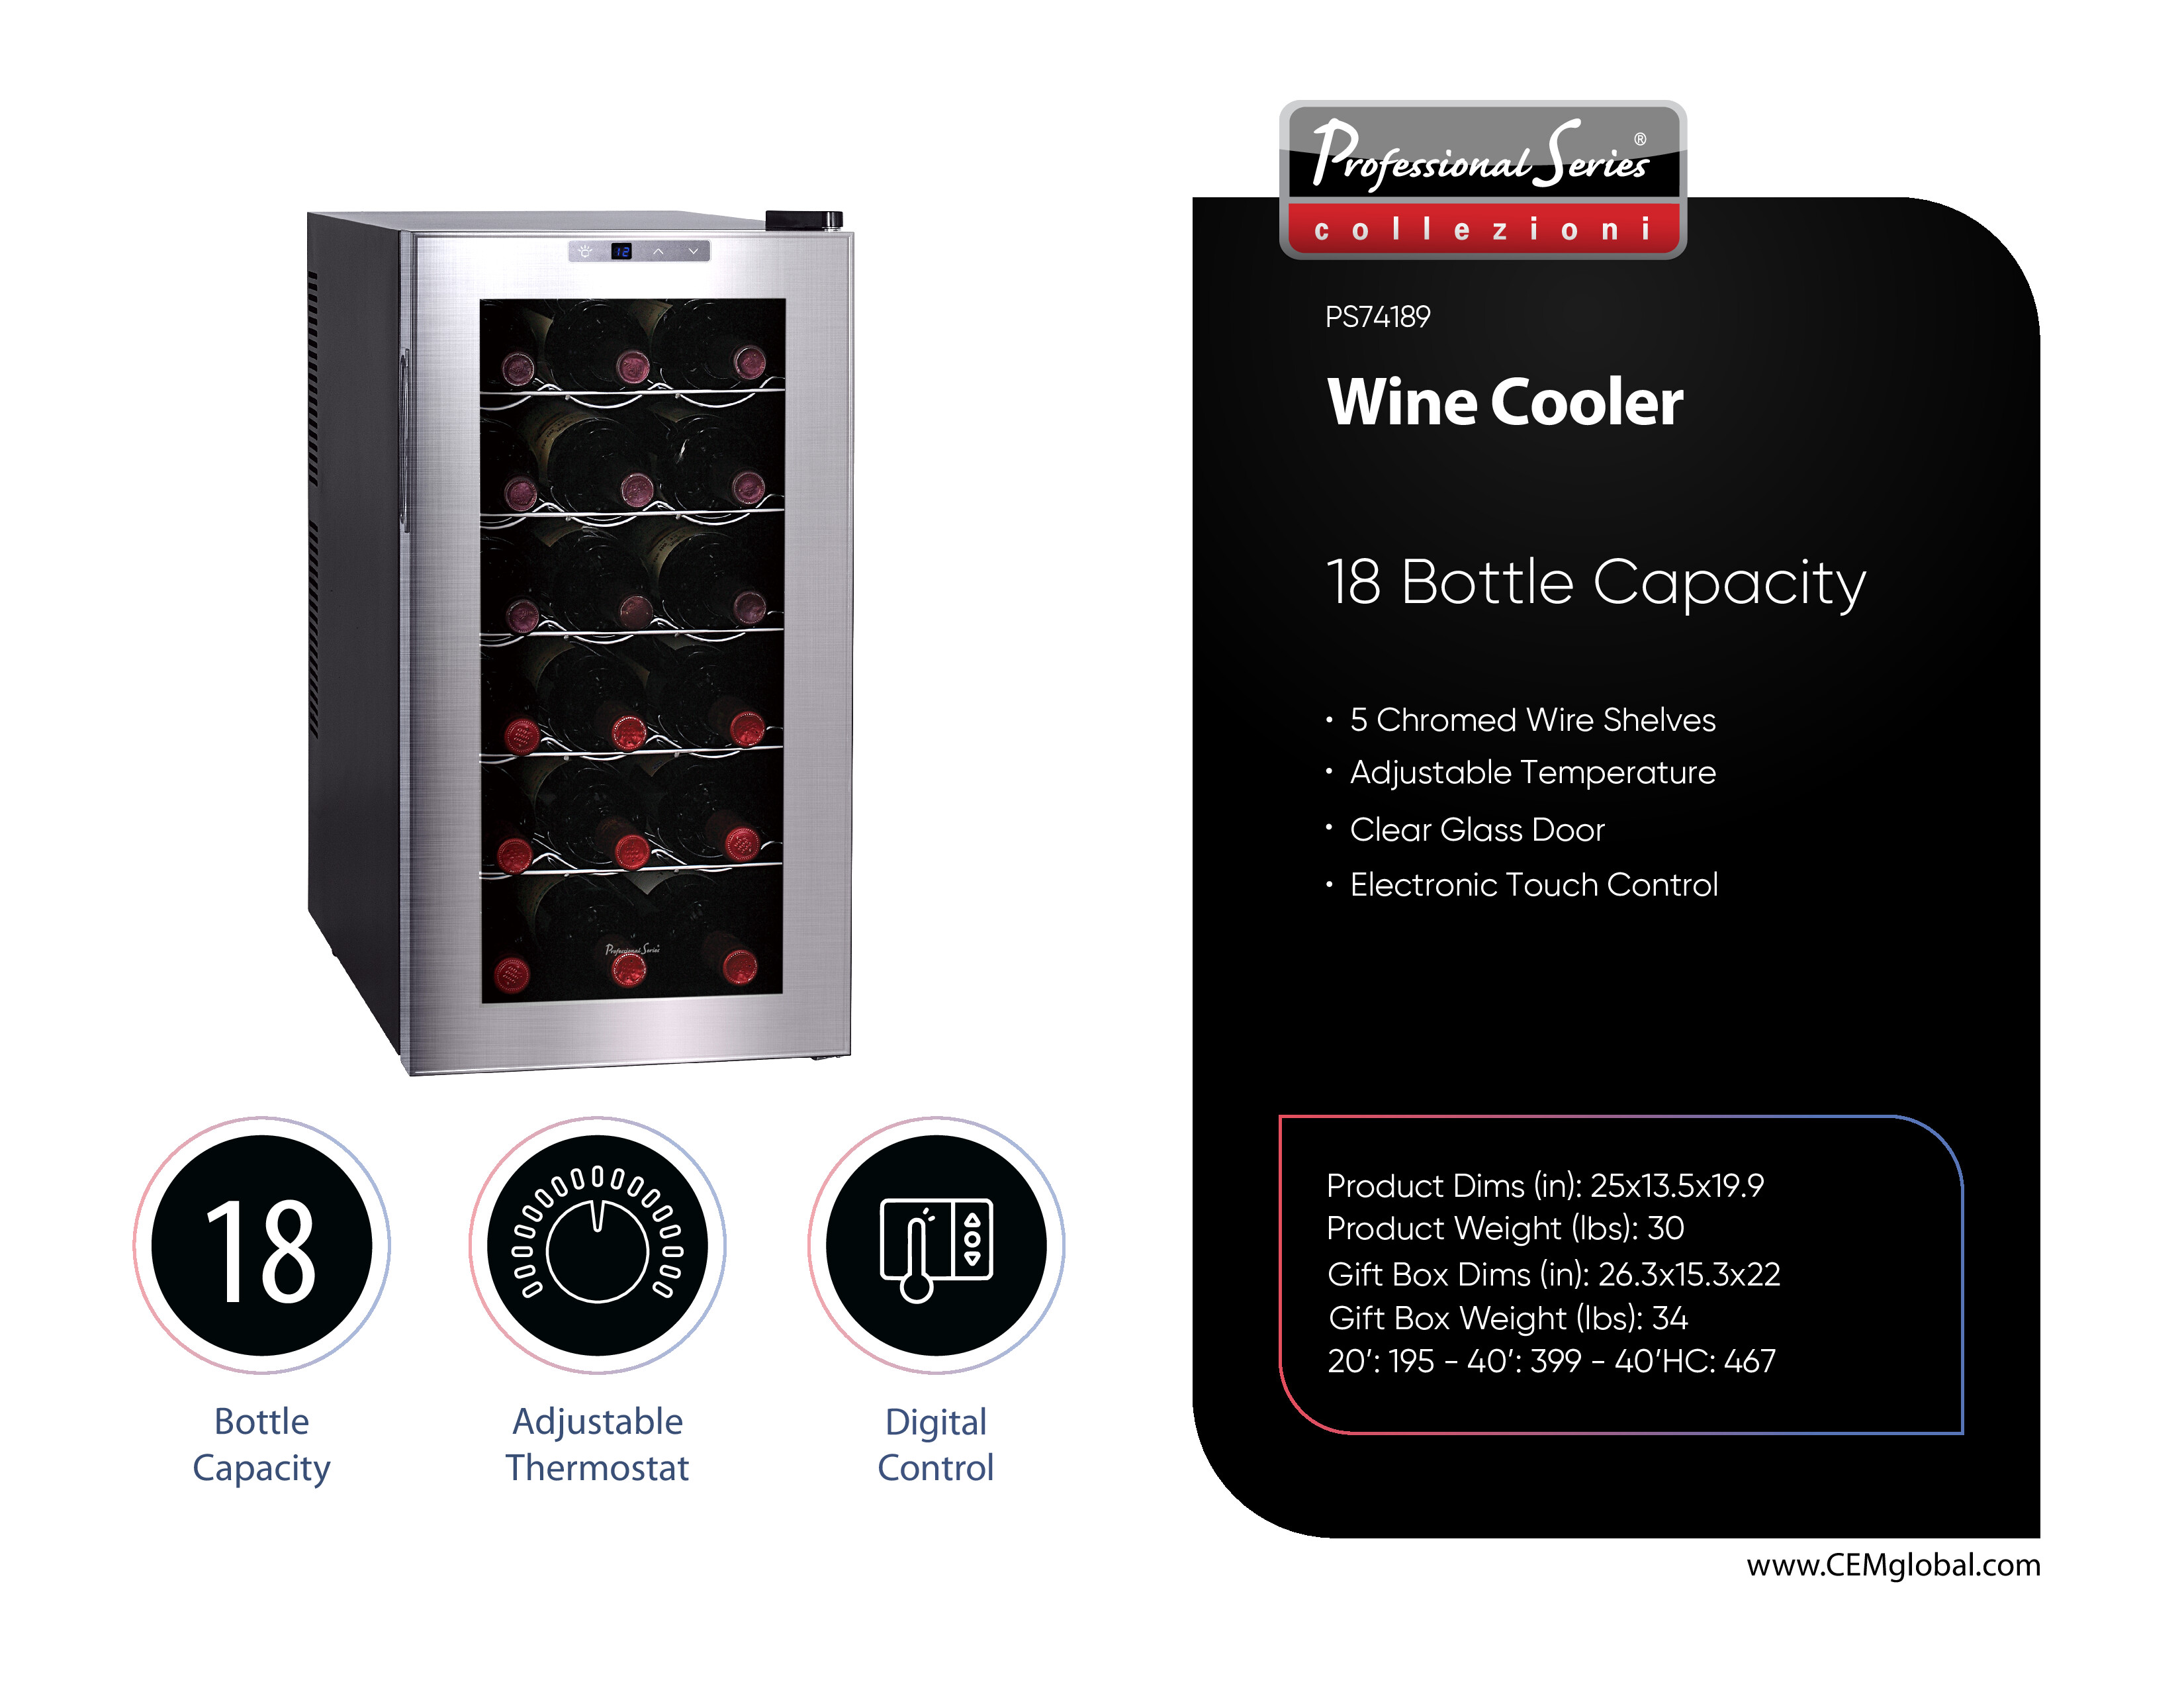 Wine Cooler 18 bottle copacity